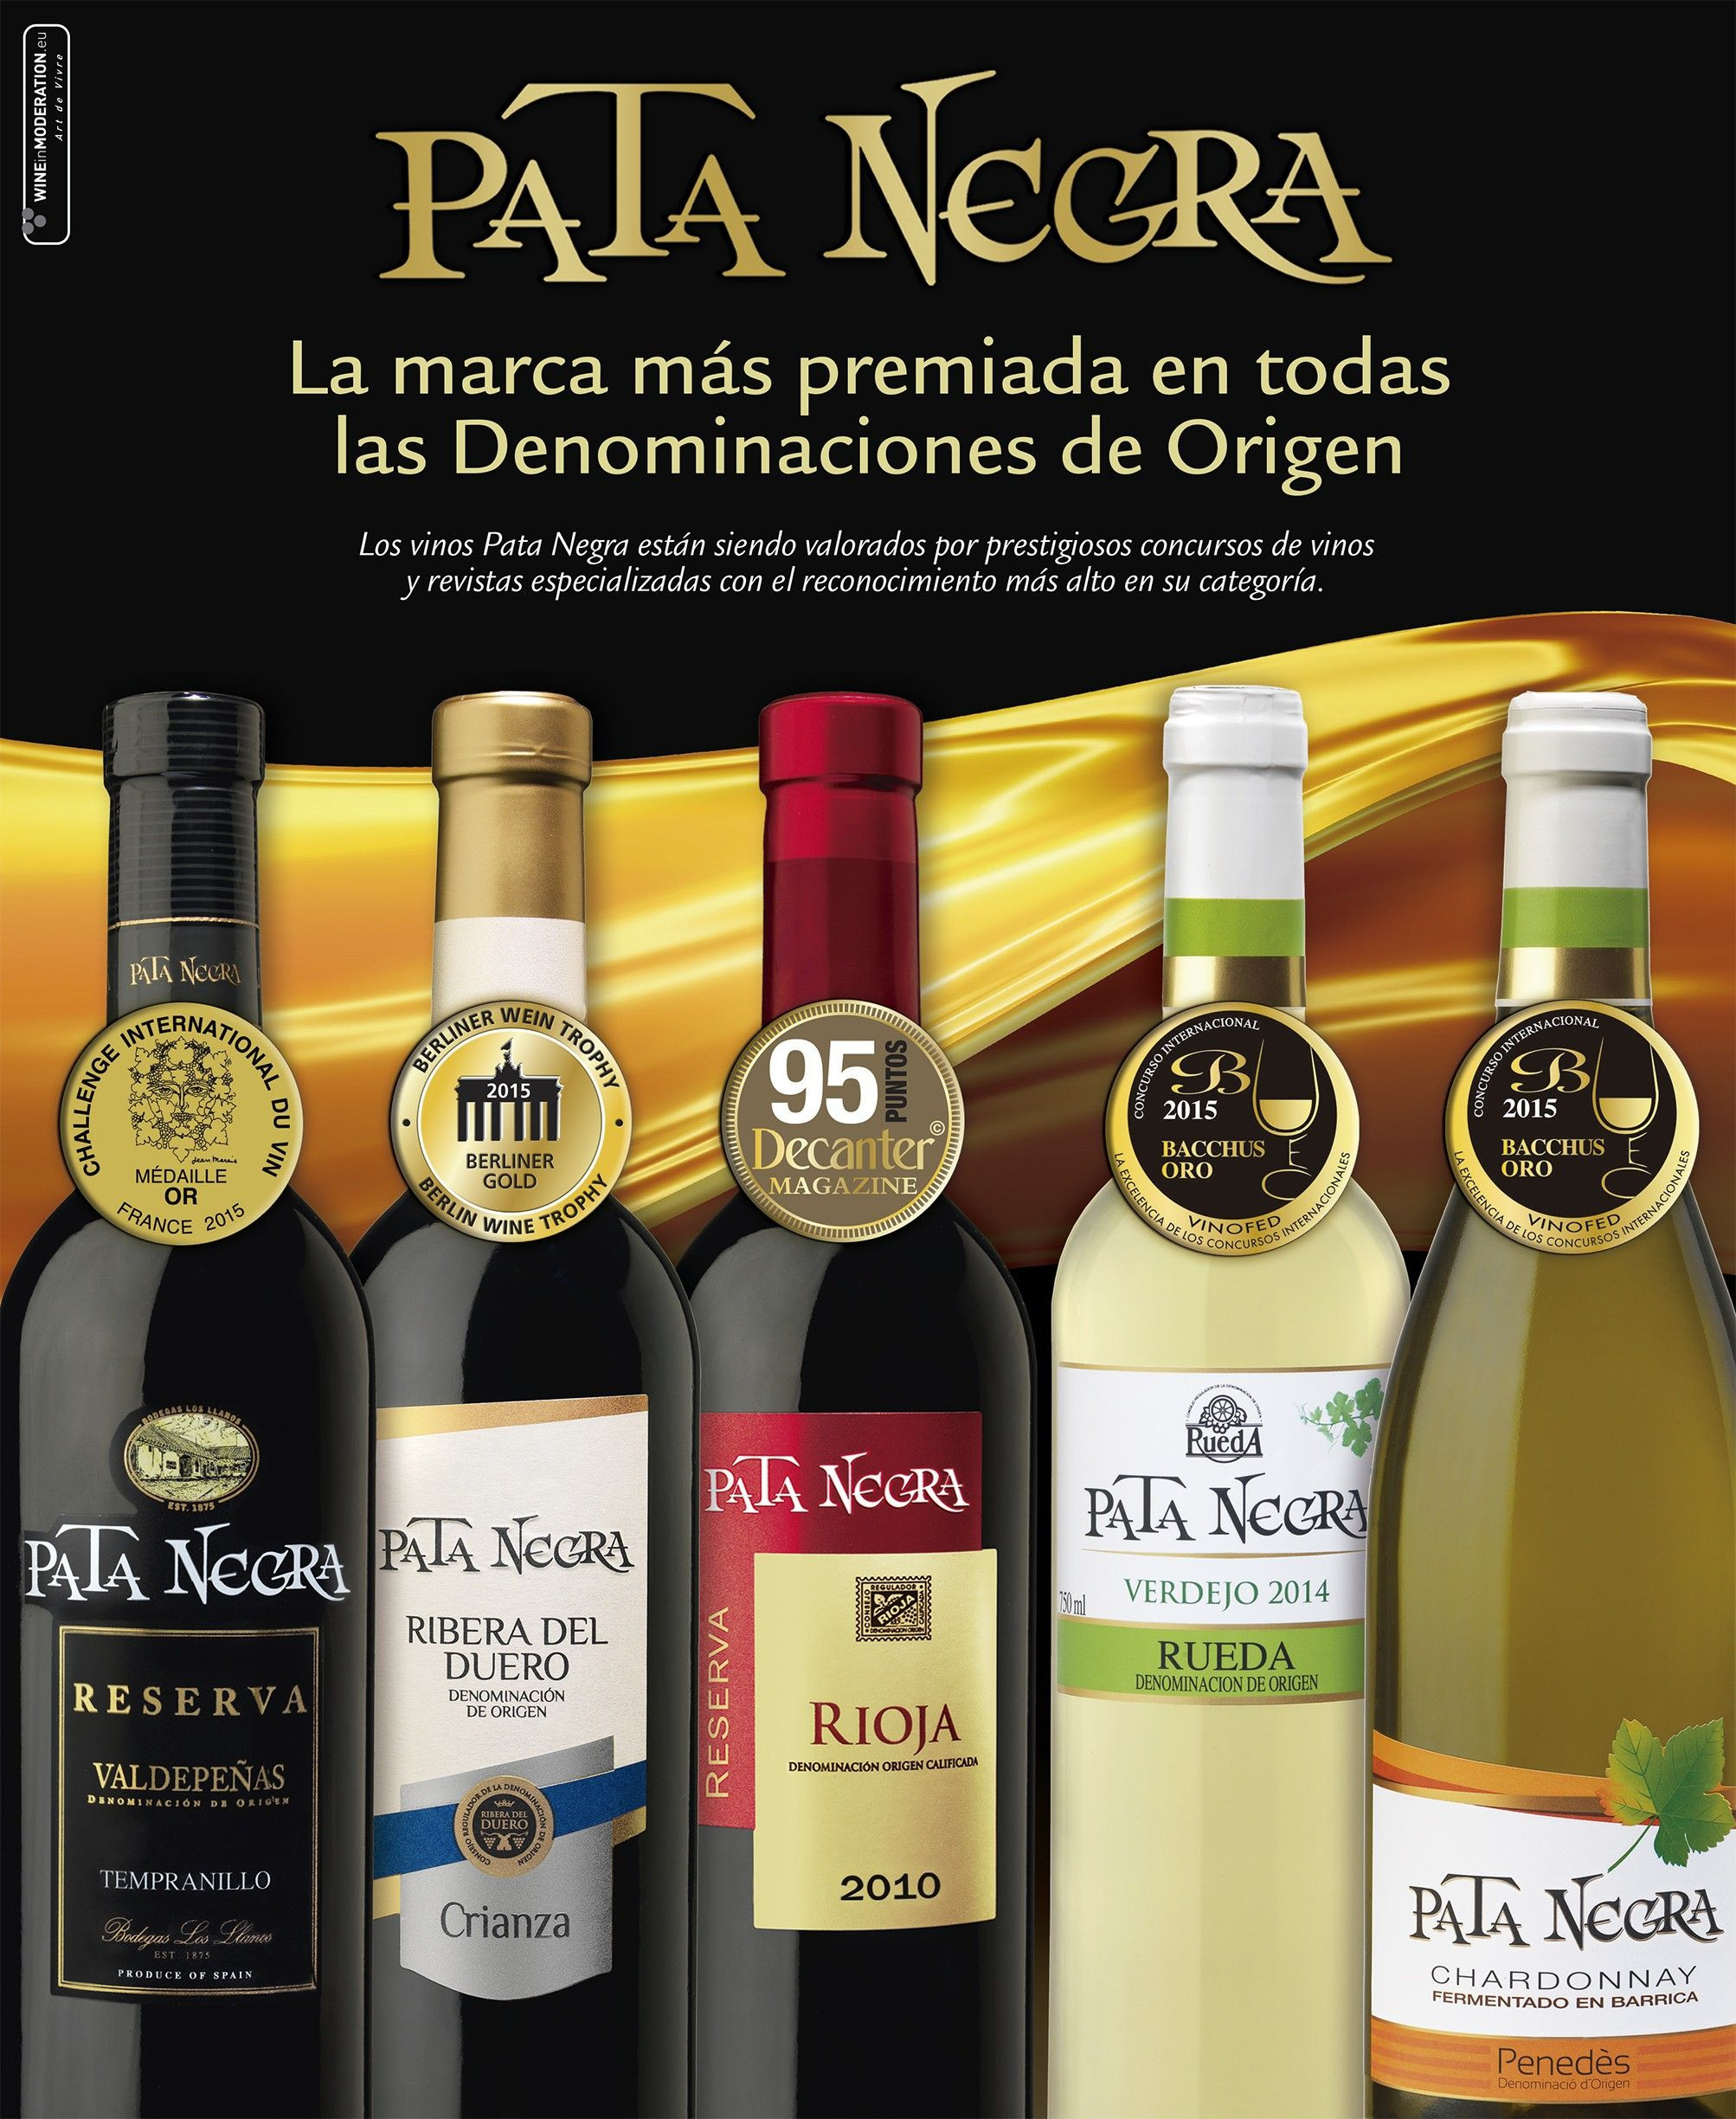 La marca Pata Negra, de J. García Carrión, el vino más vendido en